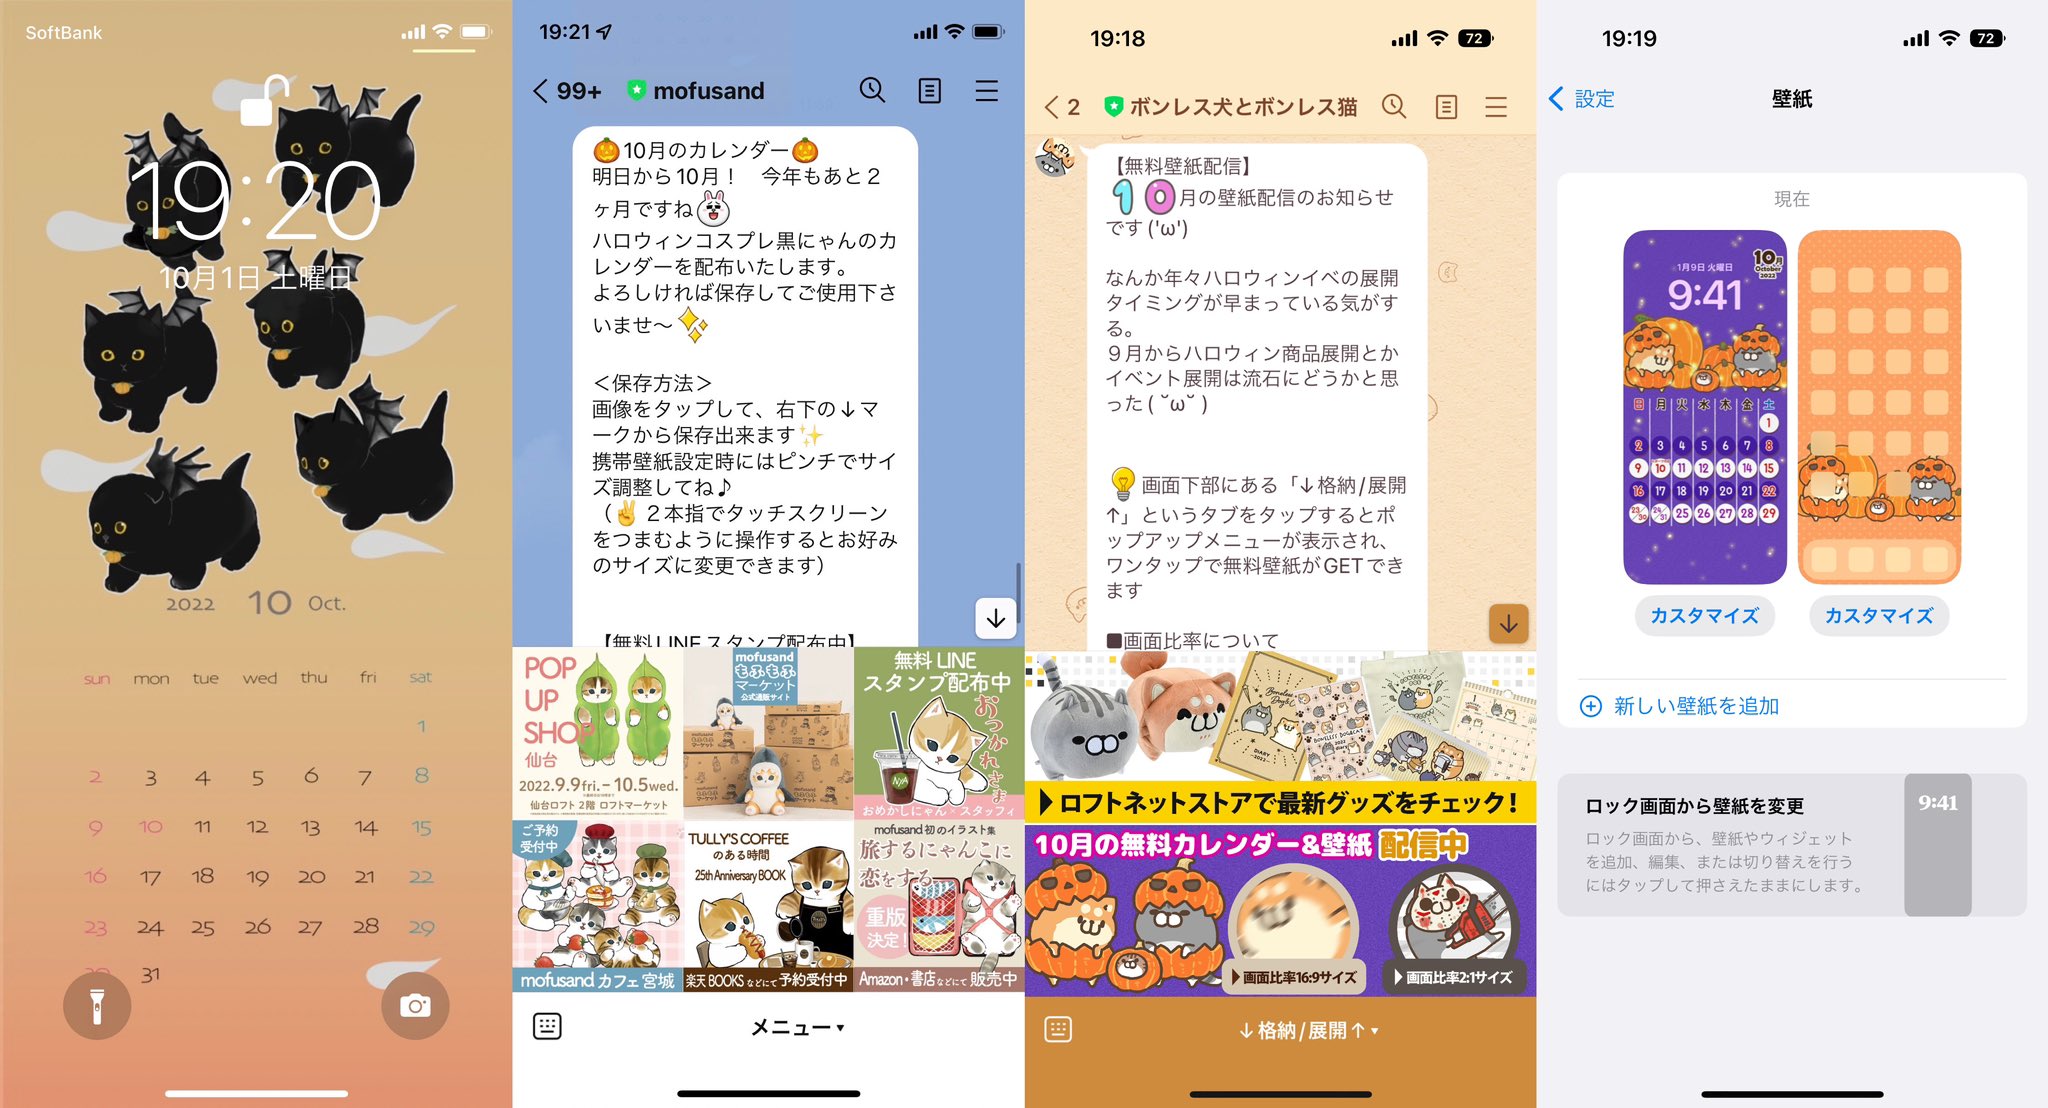 mofusand さんとボンレス犬猫さんの10月のカレンダーをiPhoneにセット完了(∩´∀｀)∩ https://t.co/Ml4ezcYgBJ